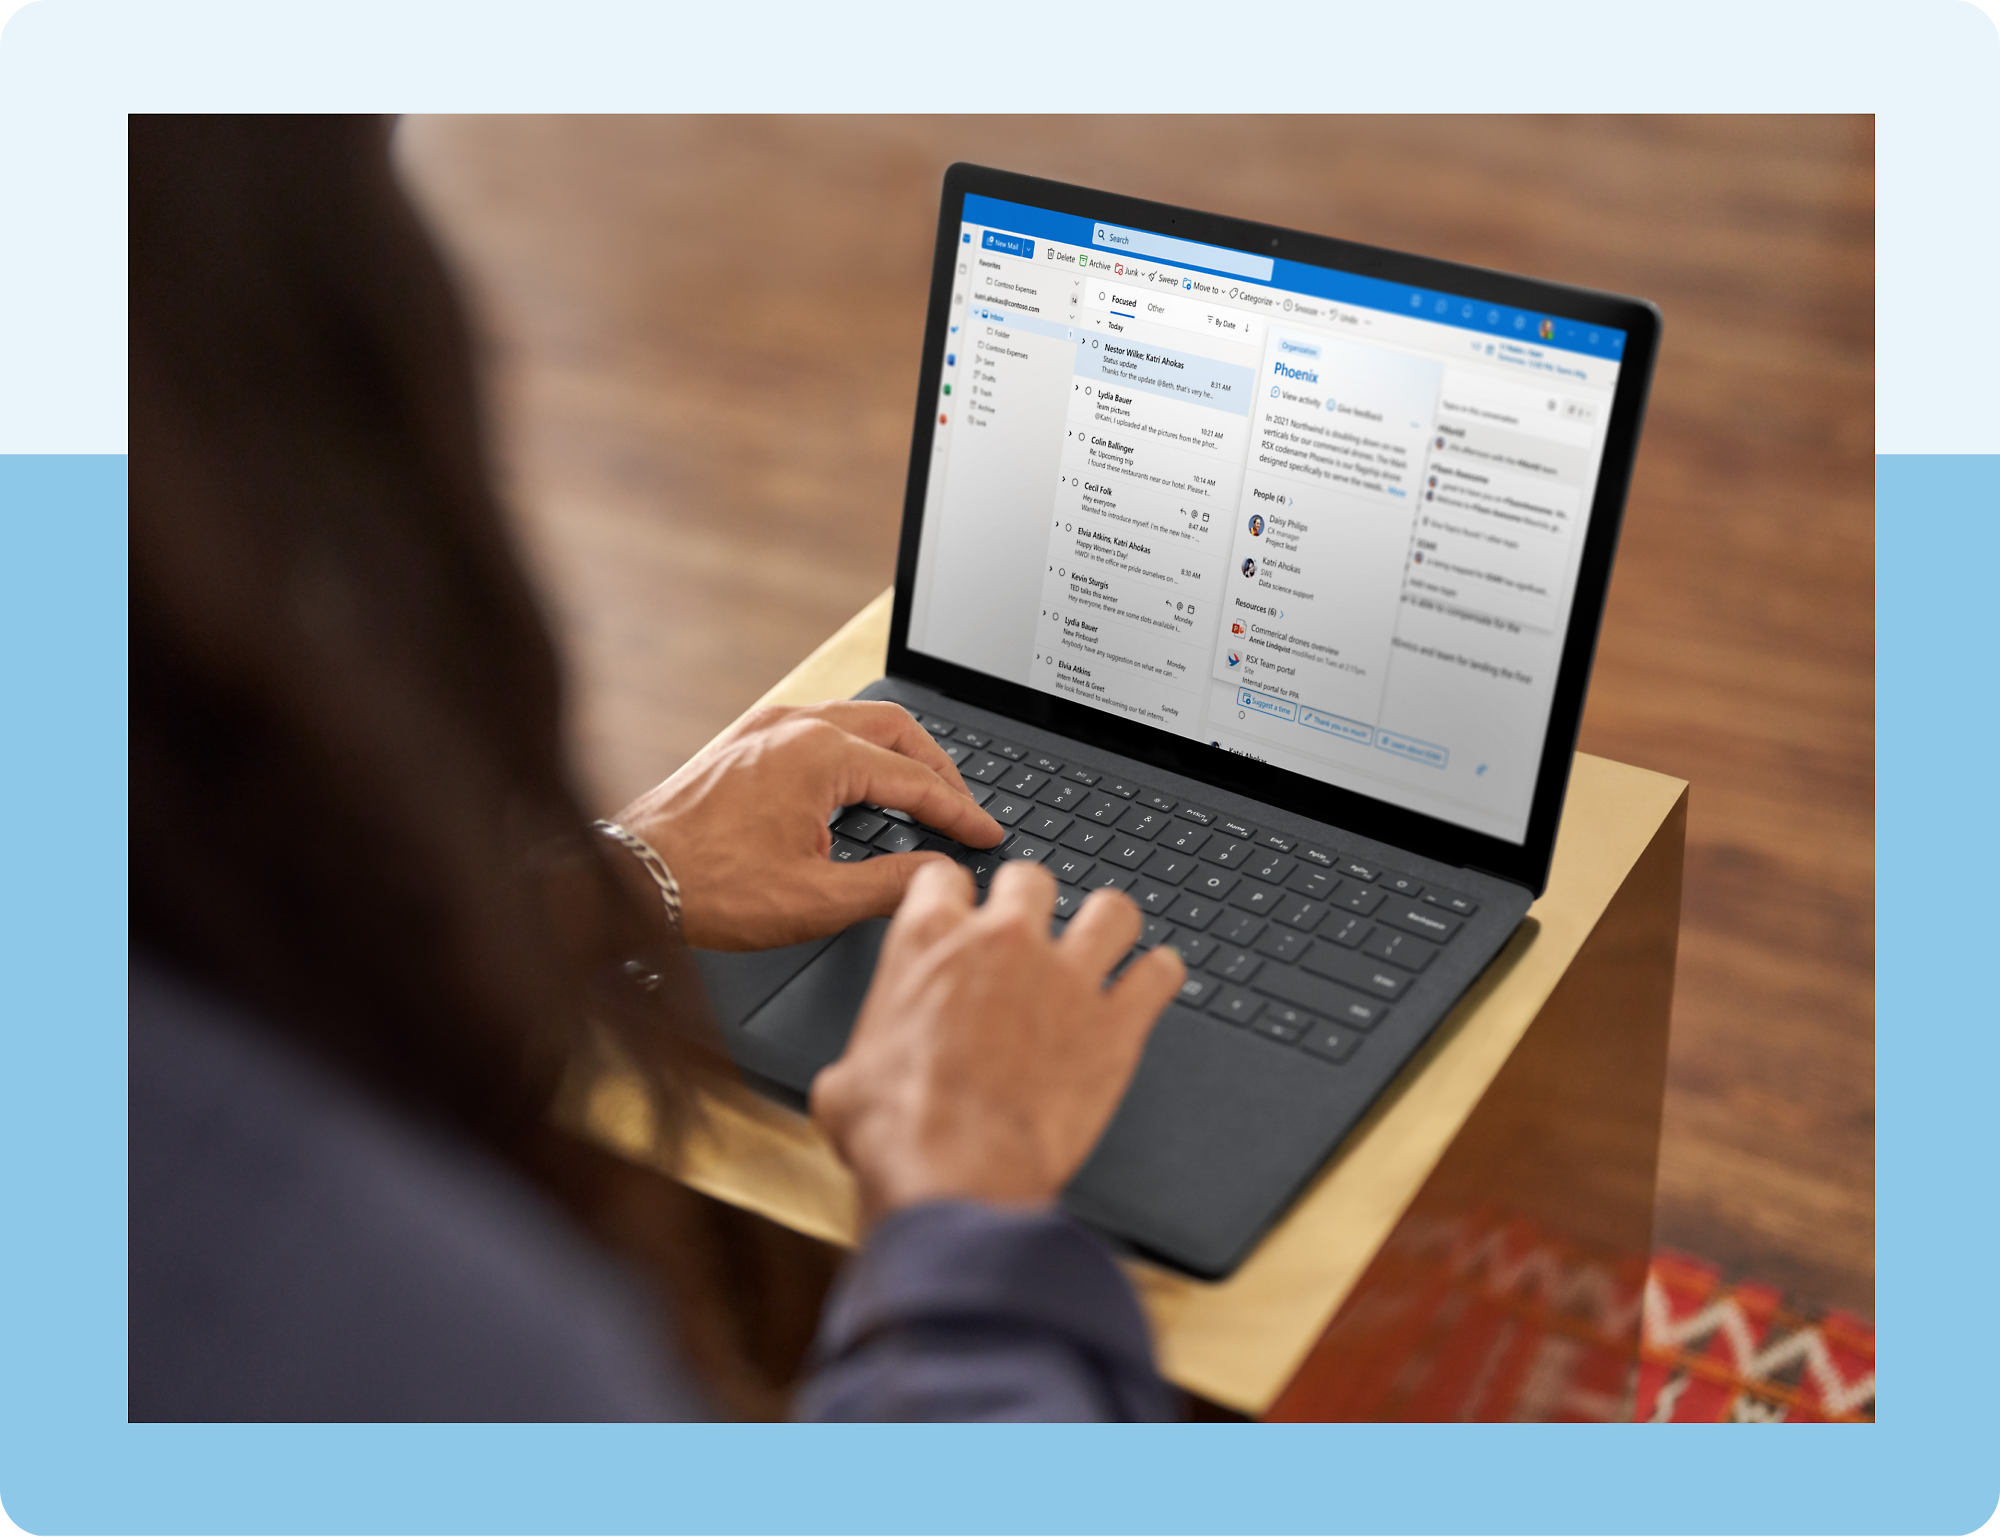 Uma pessoa digitando em um laptop com o aplicativo Outlook aberto